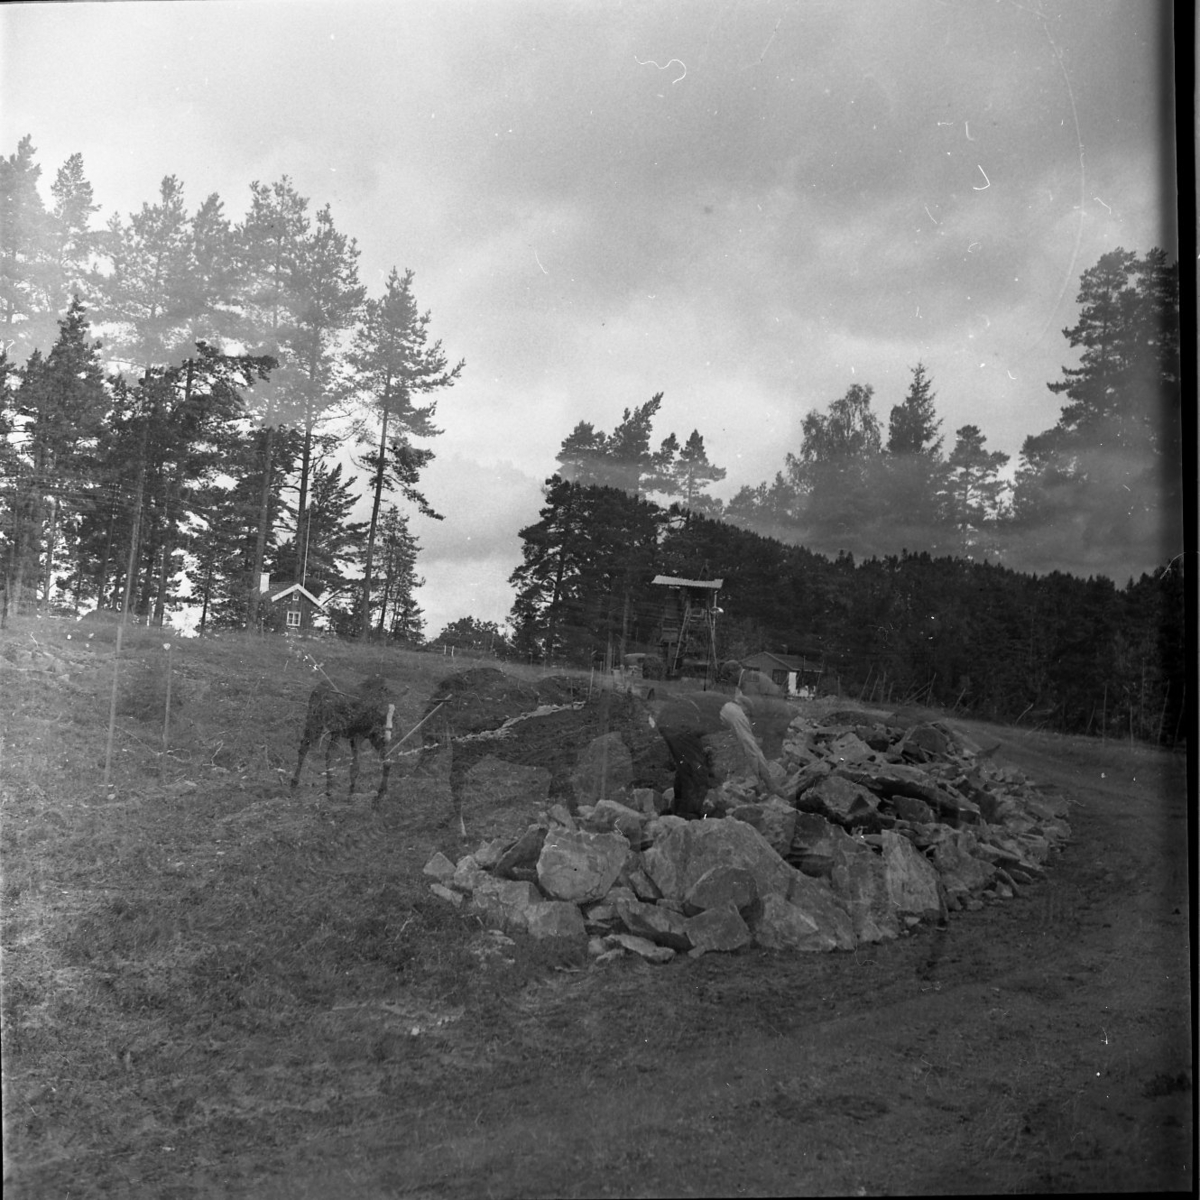 Vägarbete mellan Bunnström och Östanå 1960. Bilden är dubbelexponerad, på en bild syns vägarbete och på den andra bilden syns två hästar.